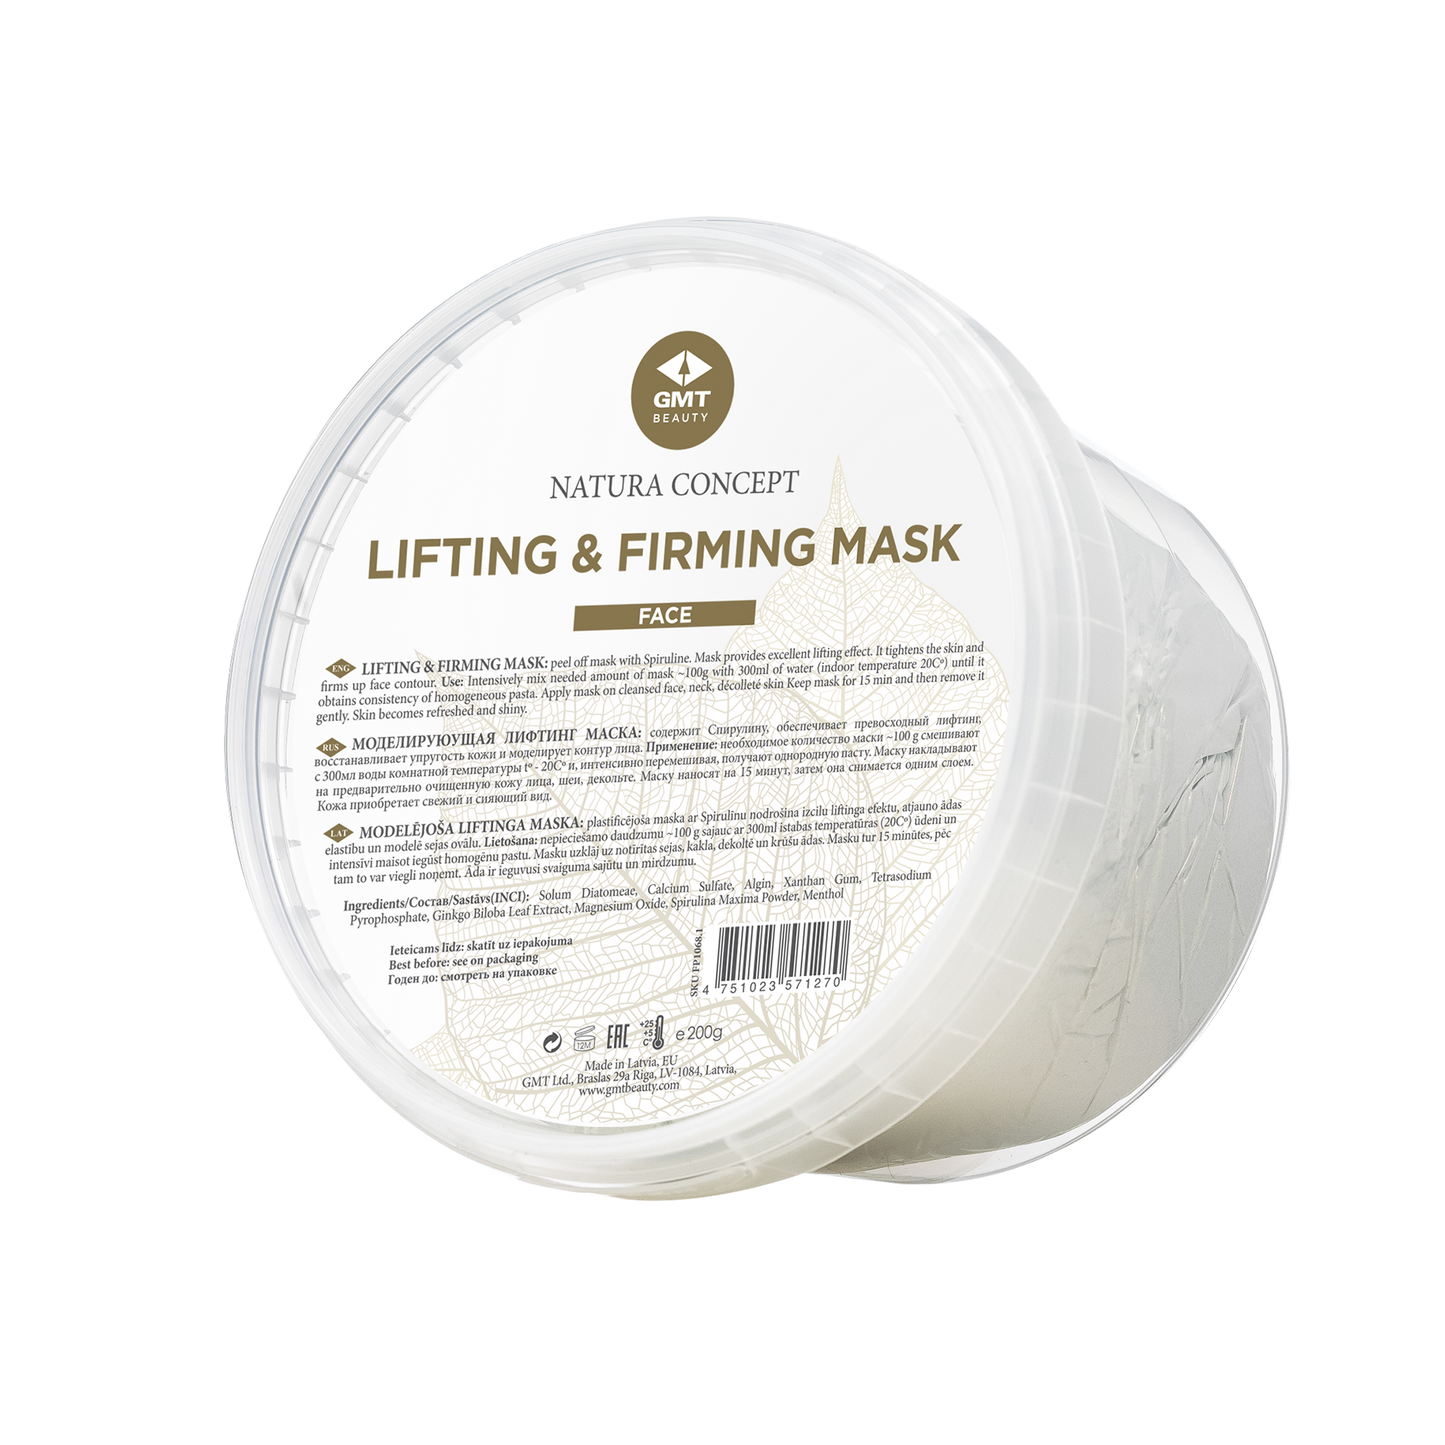 Modelējoša lifting maska (LIFTING & FIRMING MASK)